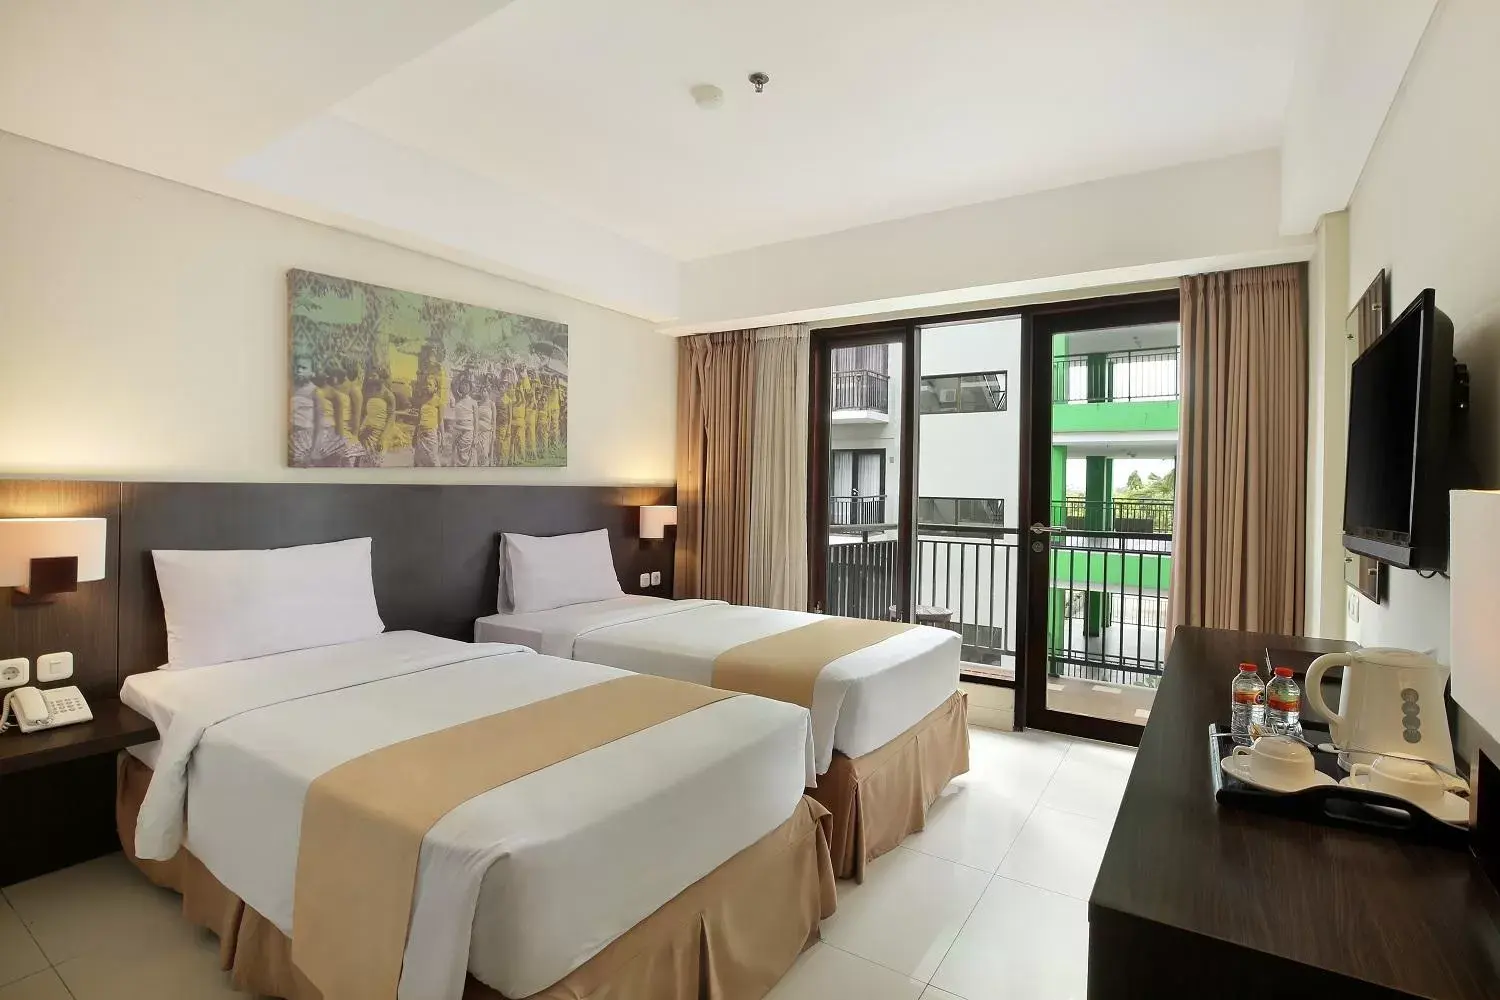 Bedroom, Bed in Rofa Kuta Hotel - CHSE Certified